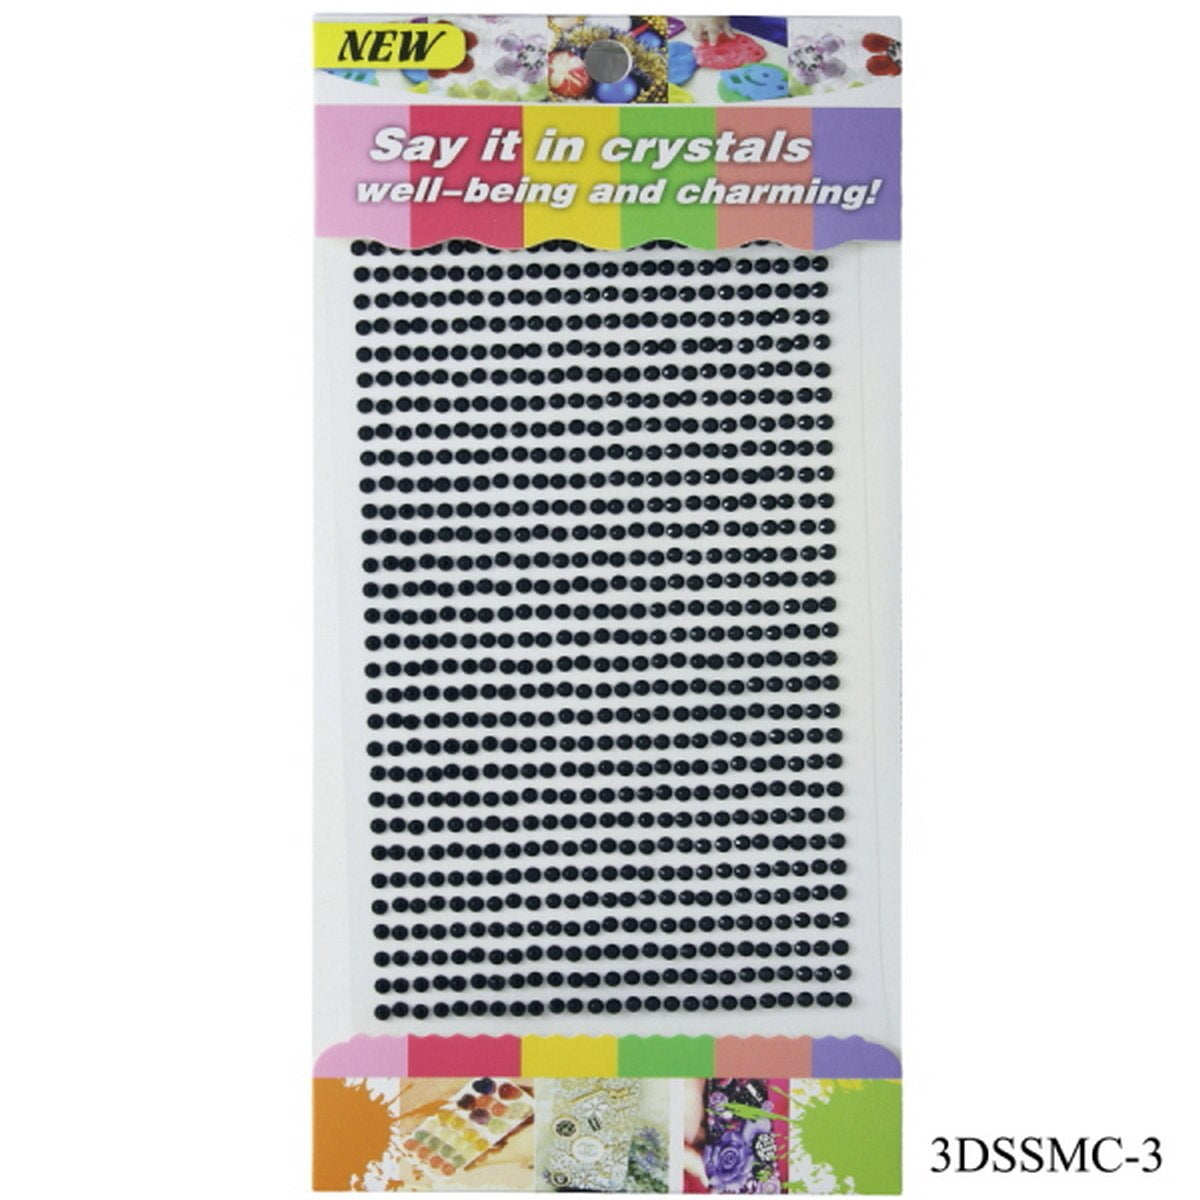 jags-mumbai Pearl & Diamond Stickers Sticker diamond 3mm 03 black